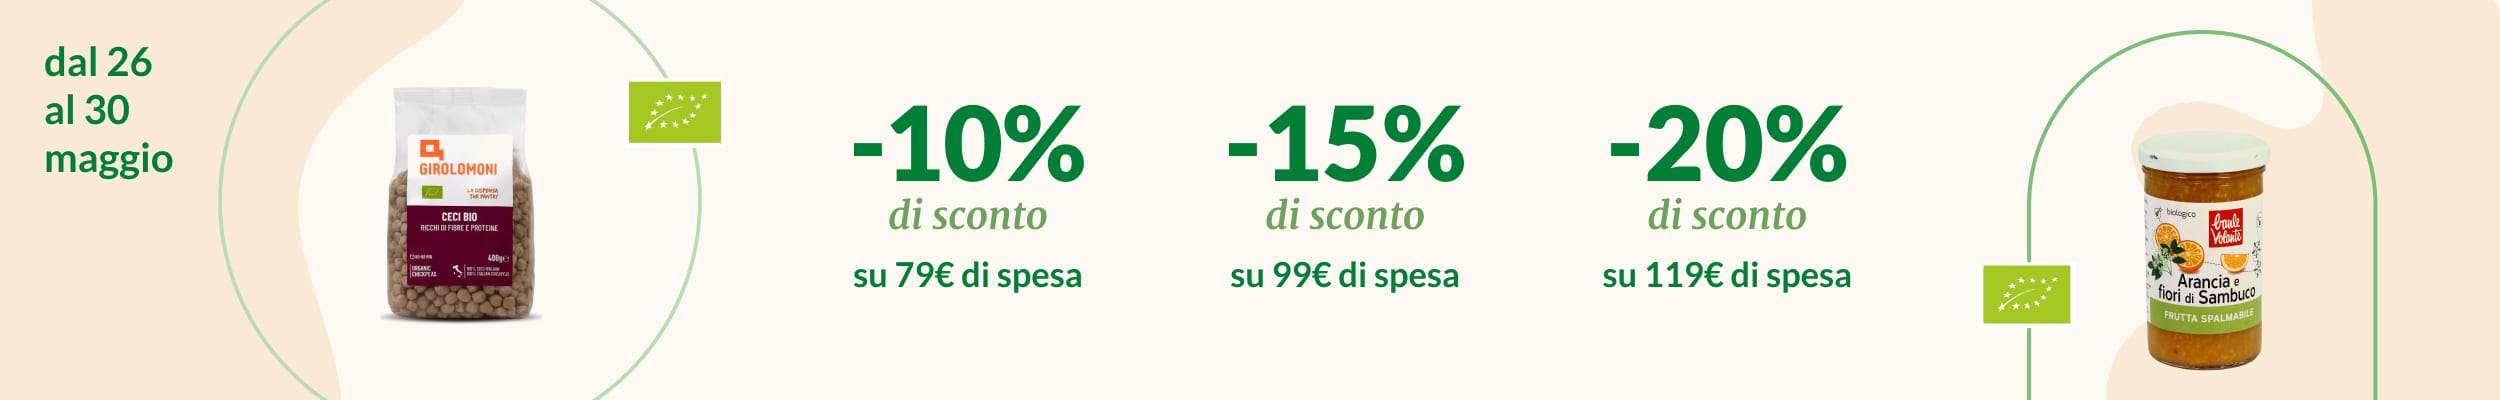 Promo soglia -10% su 79€ -15% su 99€ -20% su 119€